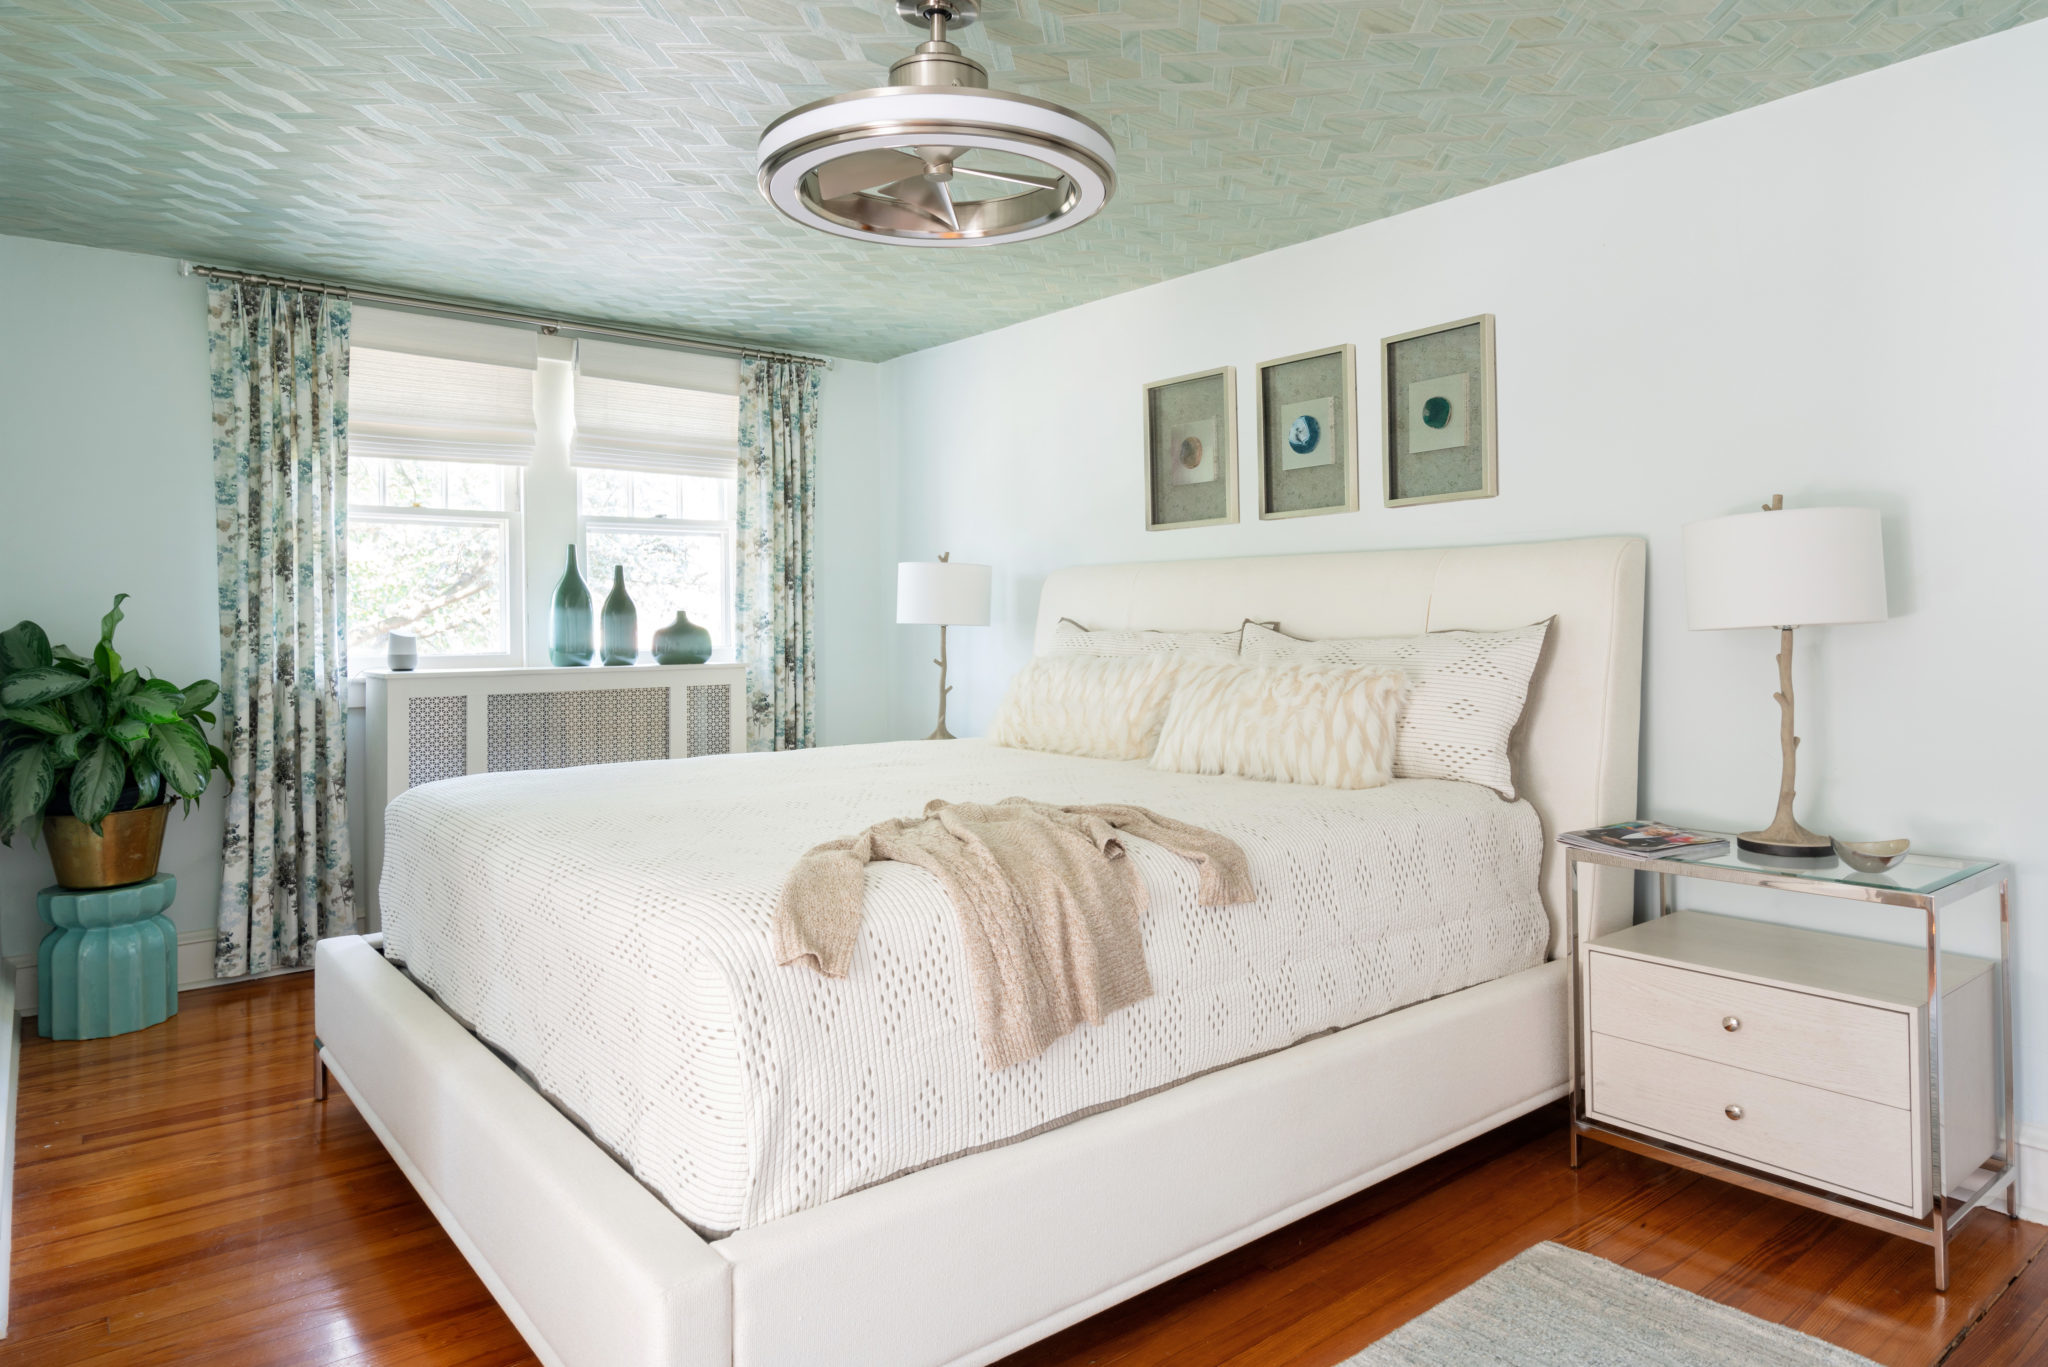 Antiques - Rustic Bedroom Decor Ideas